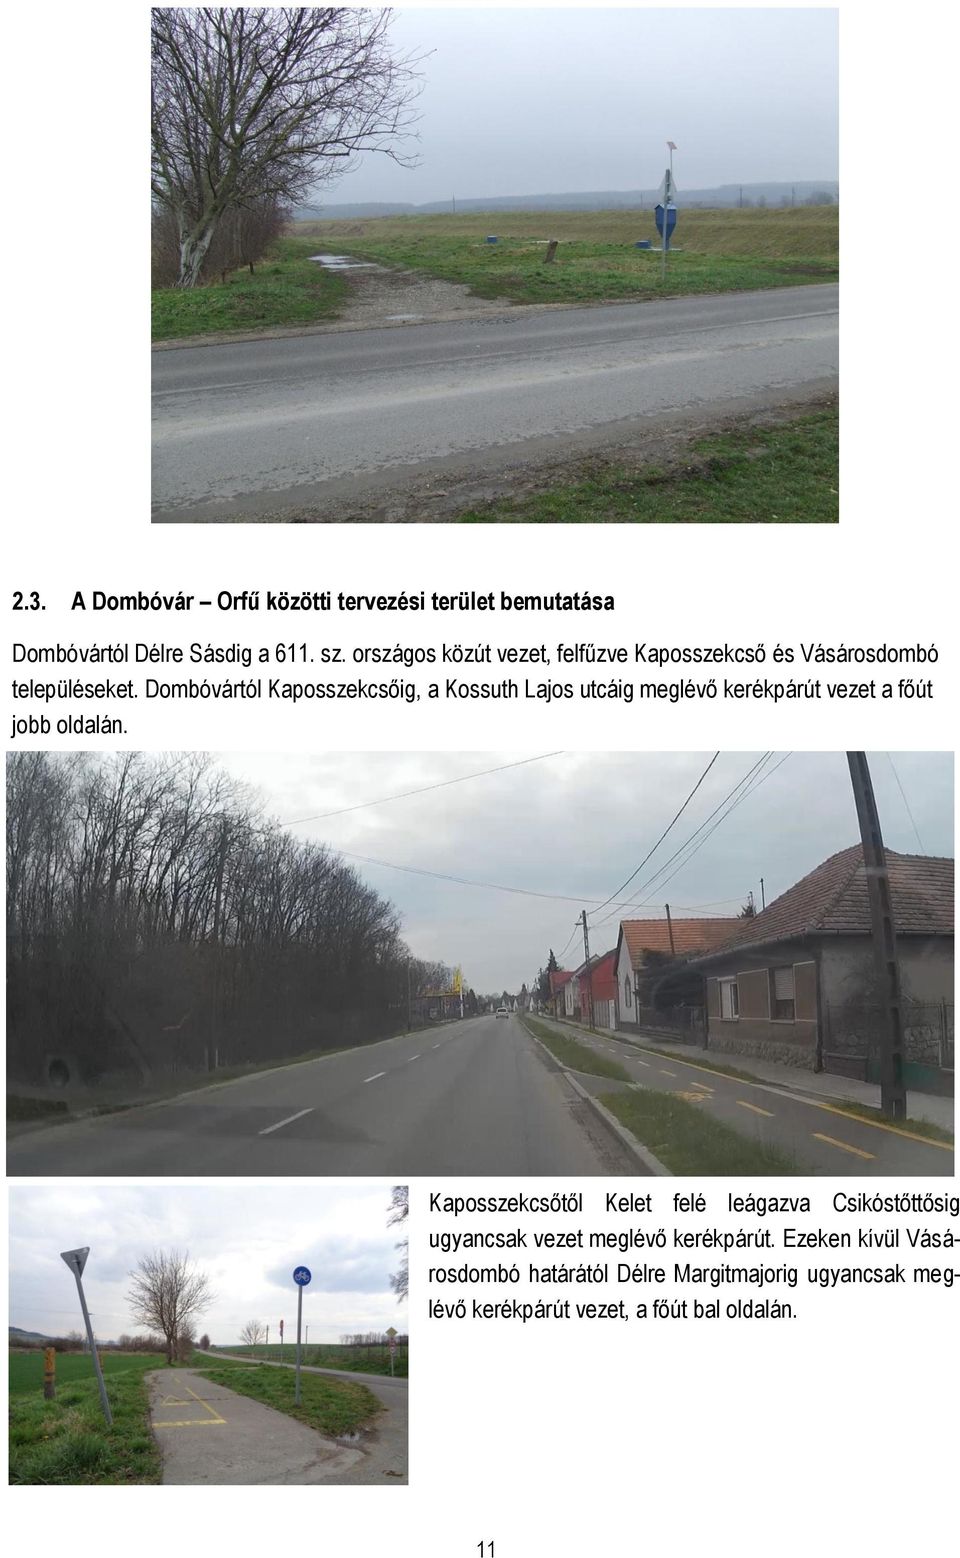 Dombóvártól Kaposszekcsőig, a Kossuth Lajos utcáig meglévő kerékpárút vezet a főút jobb oldalán.